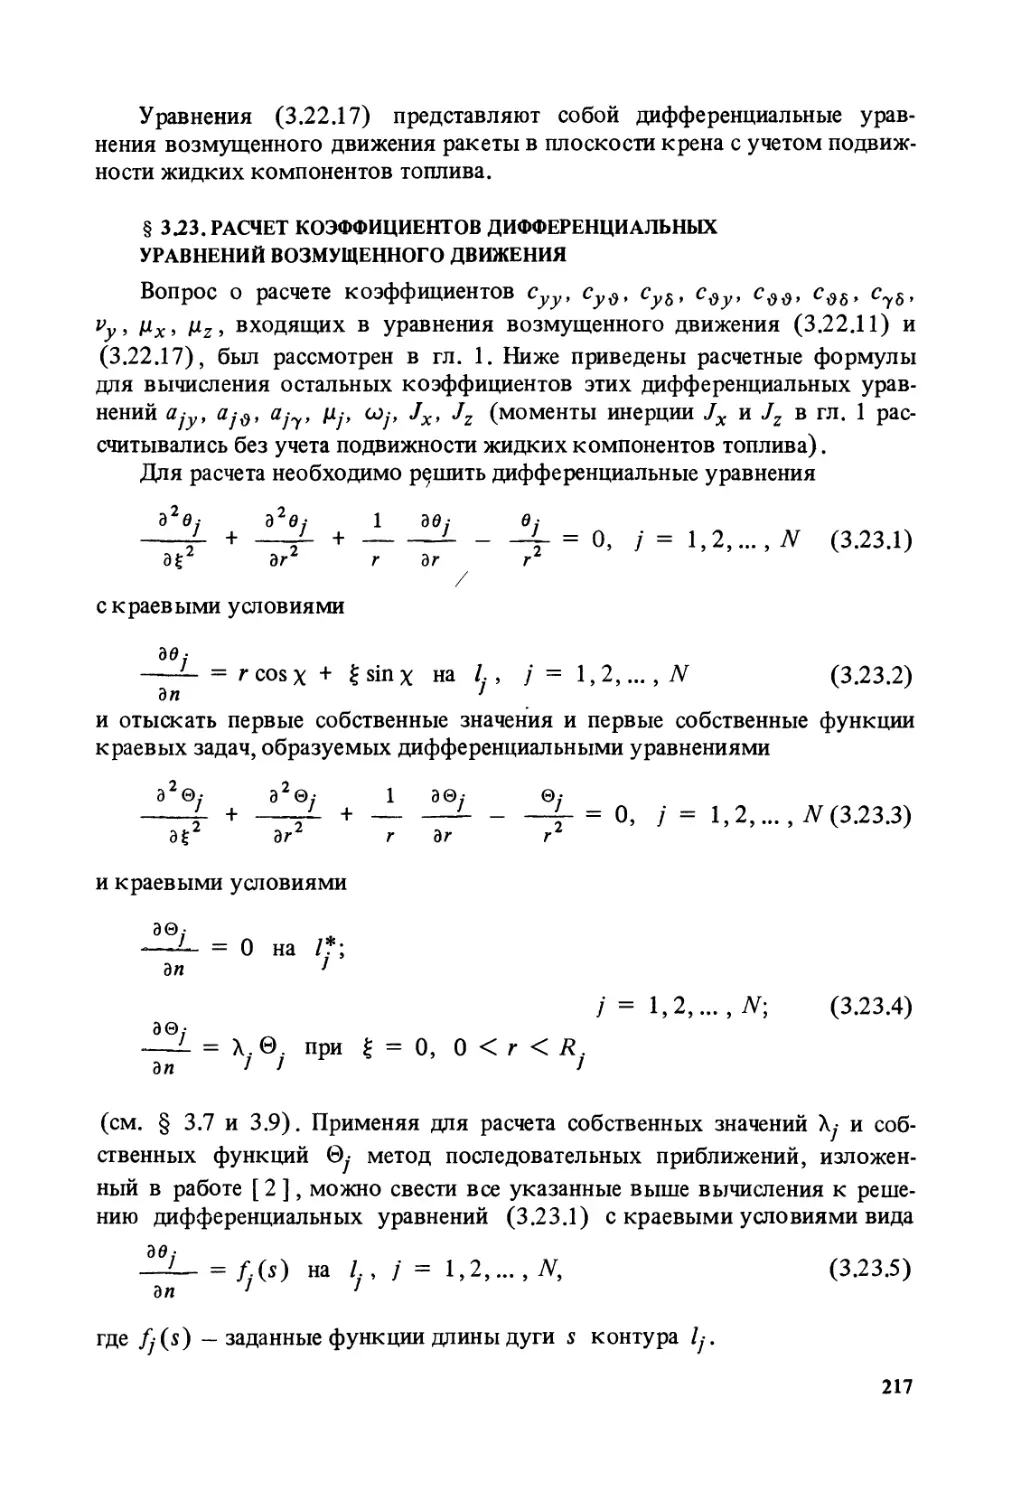 § 3.23. Расчет коэффициентов дифференциальных уравнений возмущенного движения